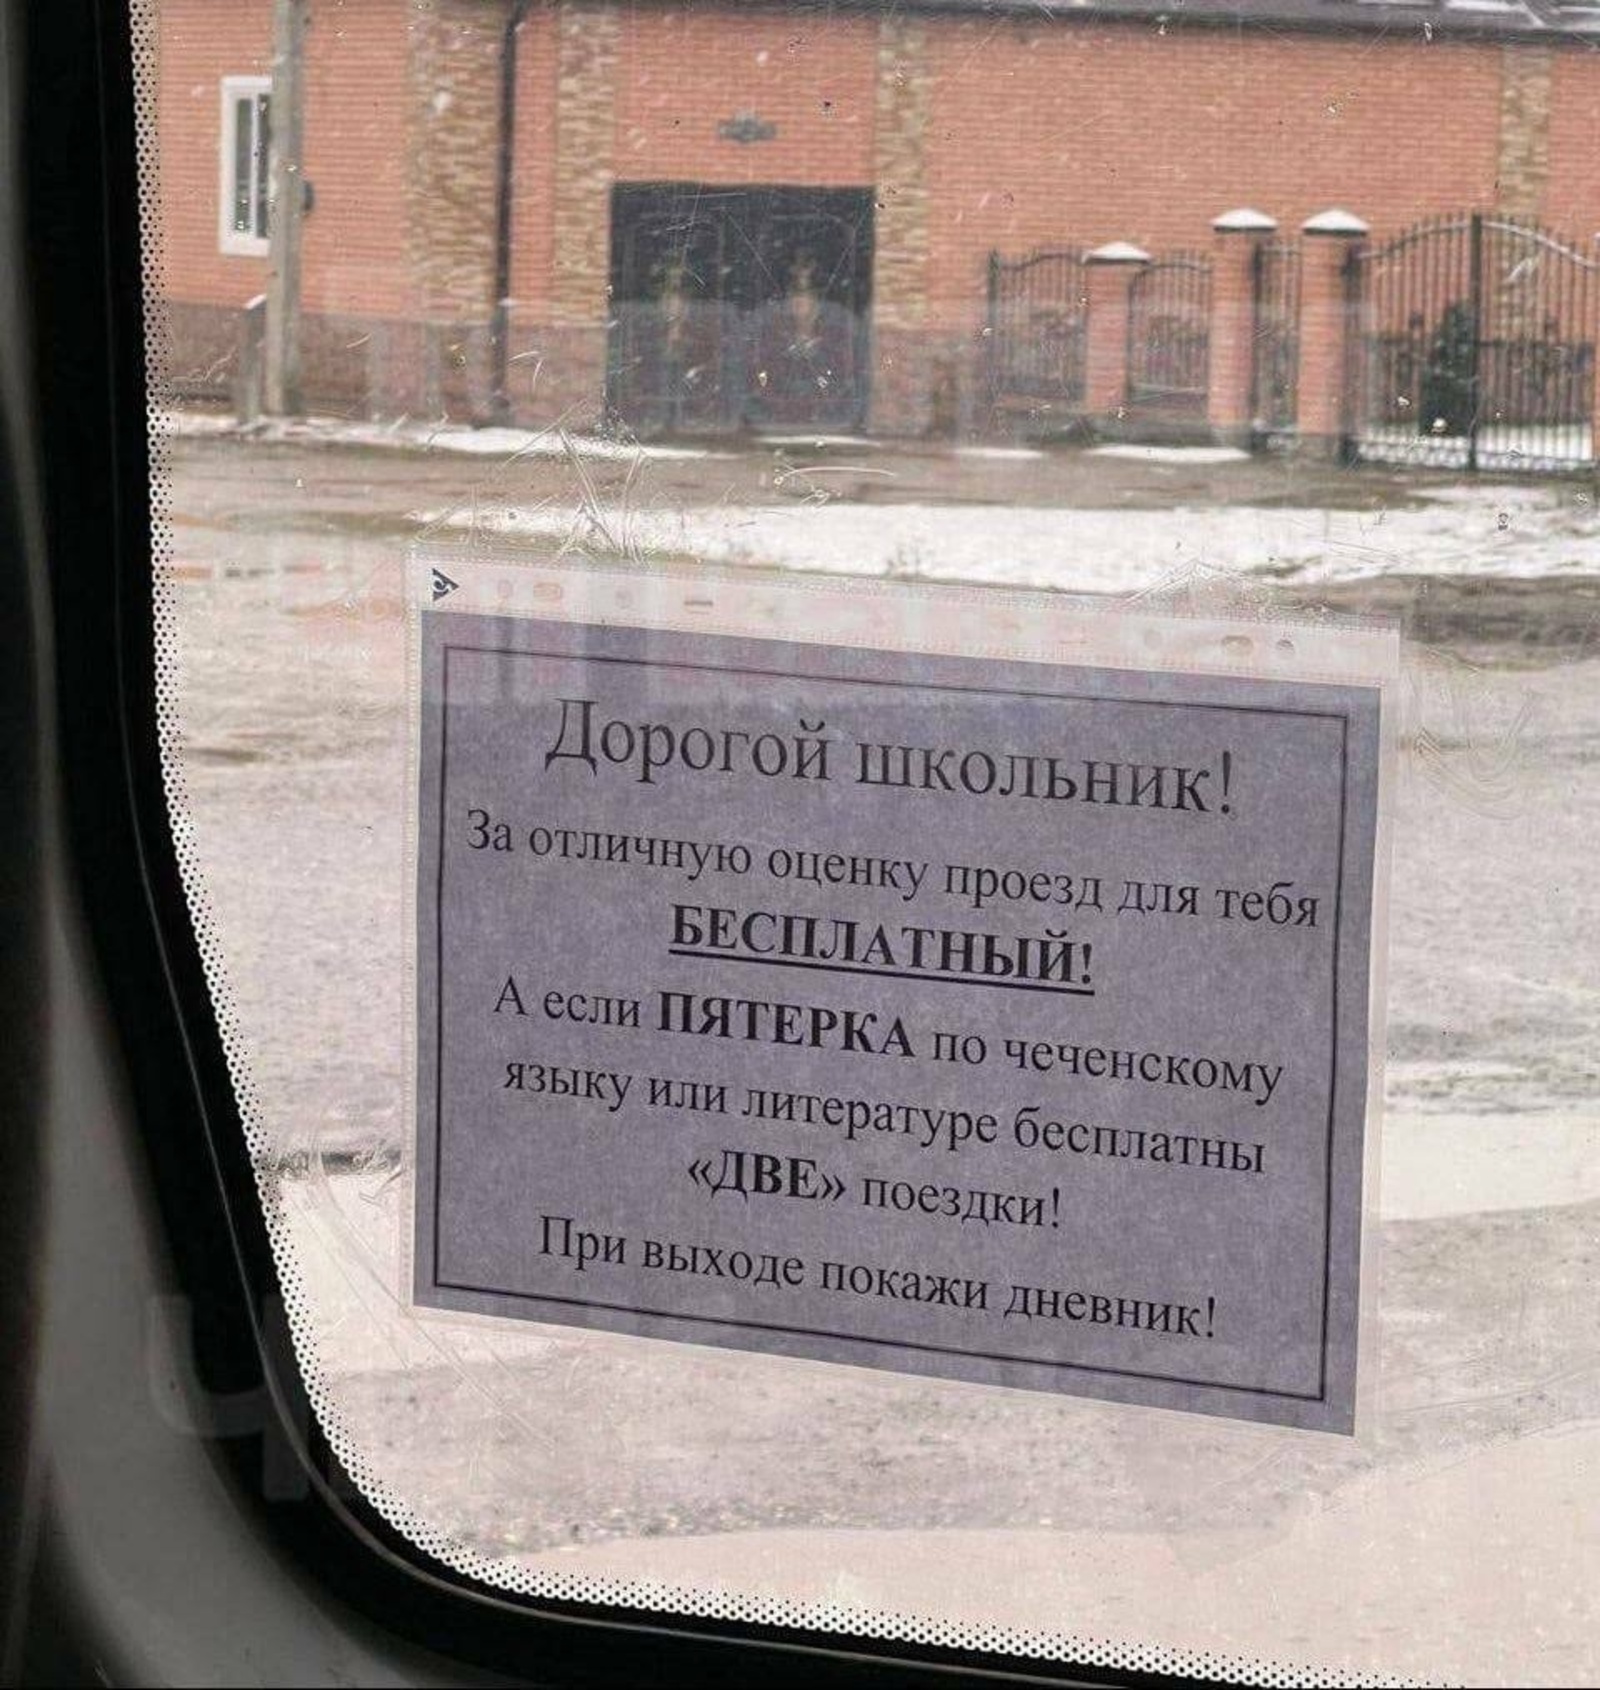 В Чеченской Республике школьники проезд в автобусе оплачивают пятерками в дневнике